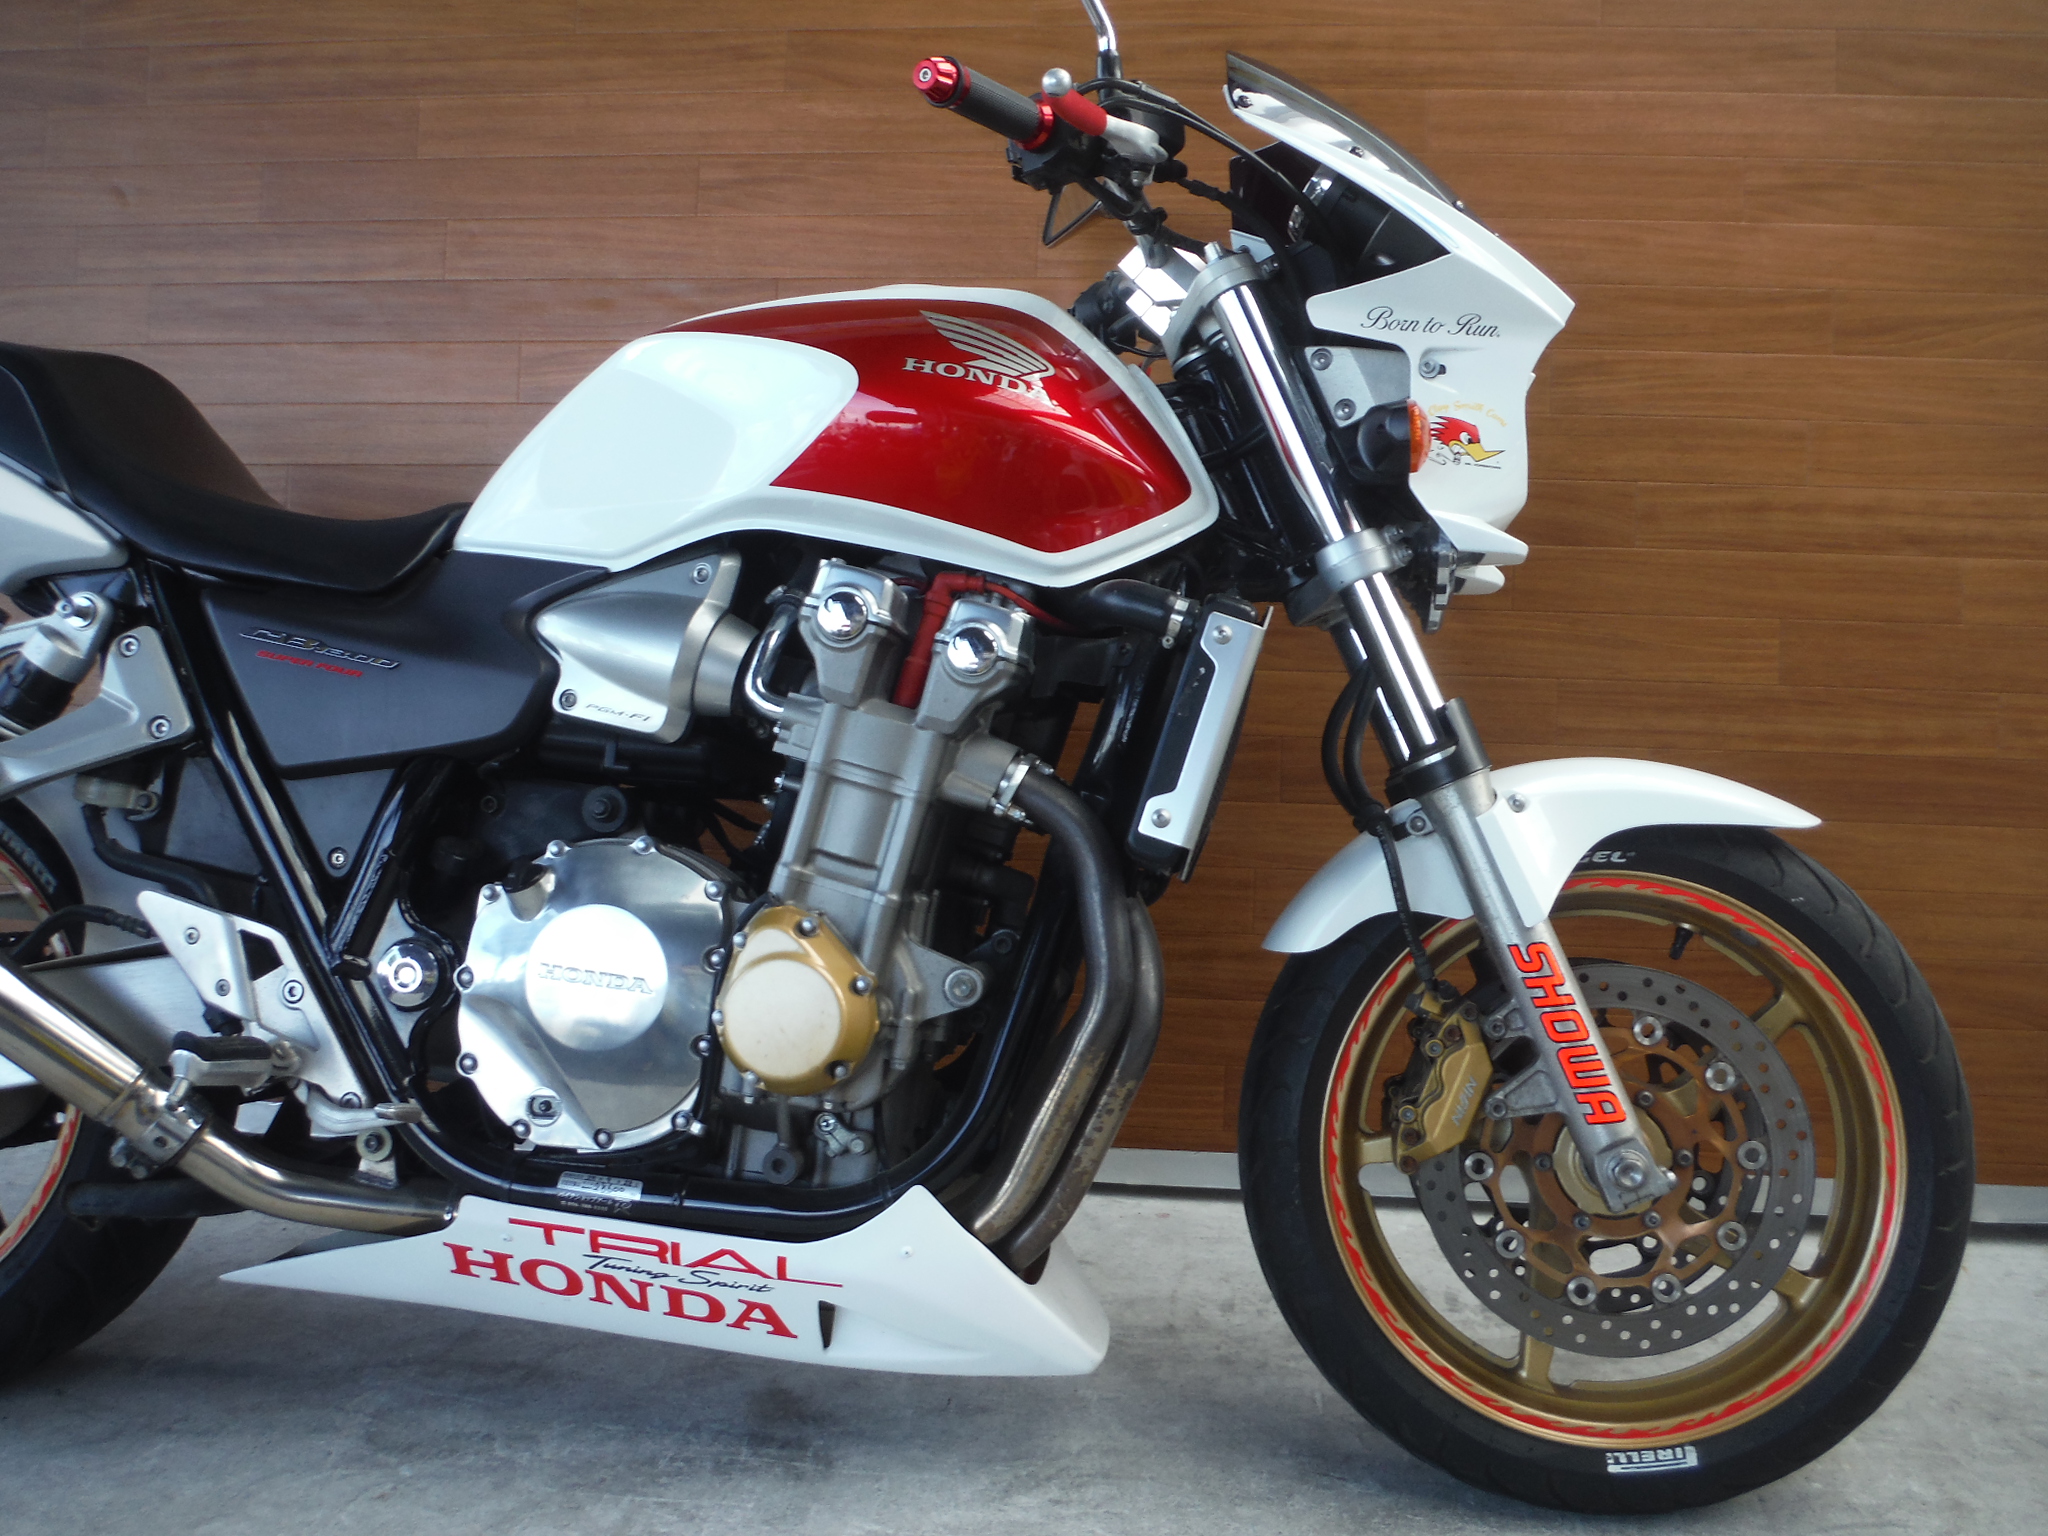 熊本中古車バイク情報 ホンダ Cb1300sf 1300 04年モデル 赤白 熊本のバイクショップ アール バイク の新車 中古車販売や買取 レンタルバイクのことならおまかせください